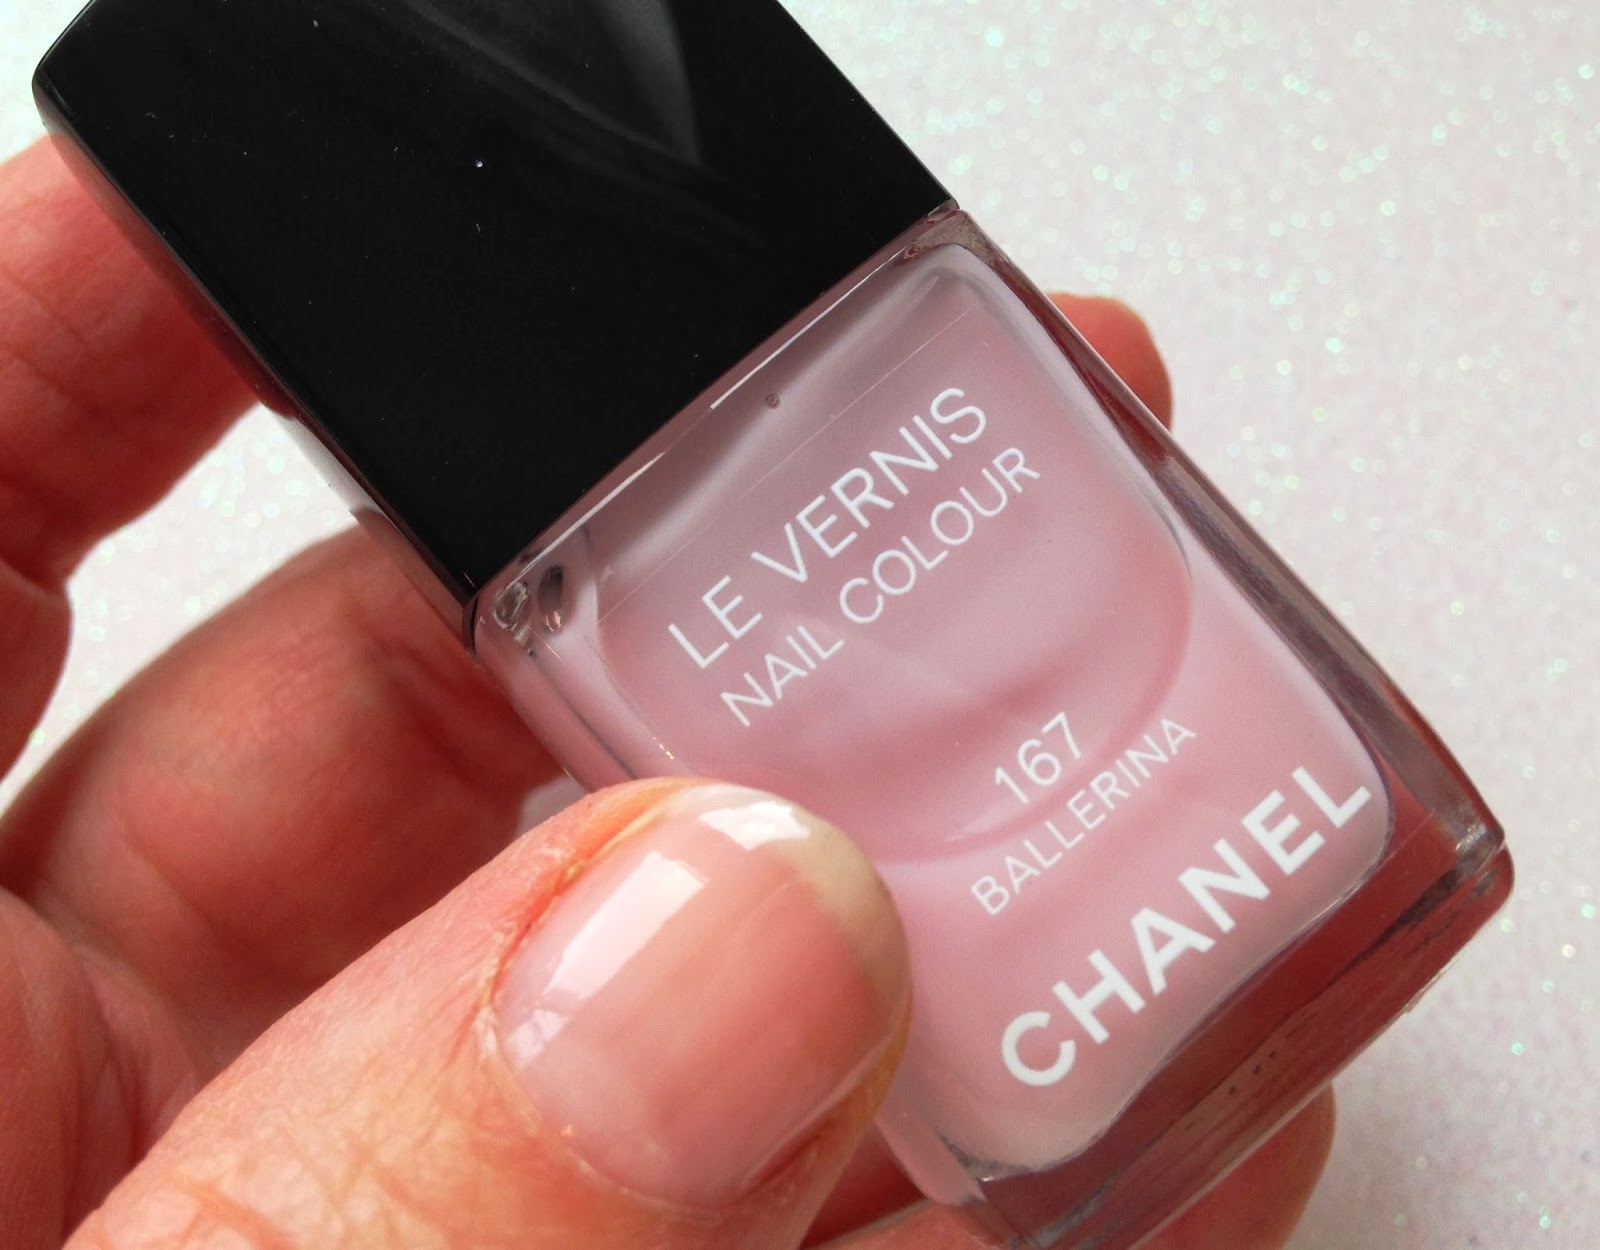 Chanel Le Vernis Longwear Nail Colour in 18 Rouge Noir - wide 10